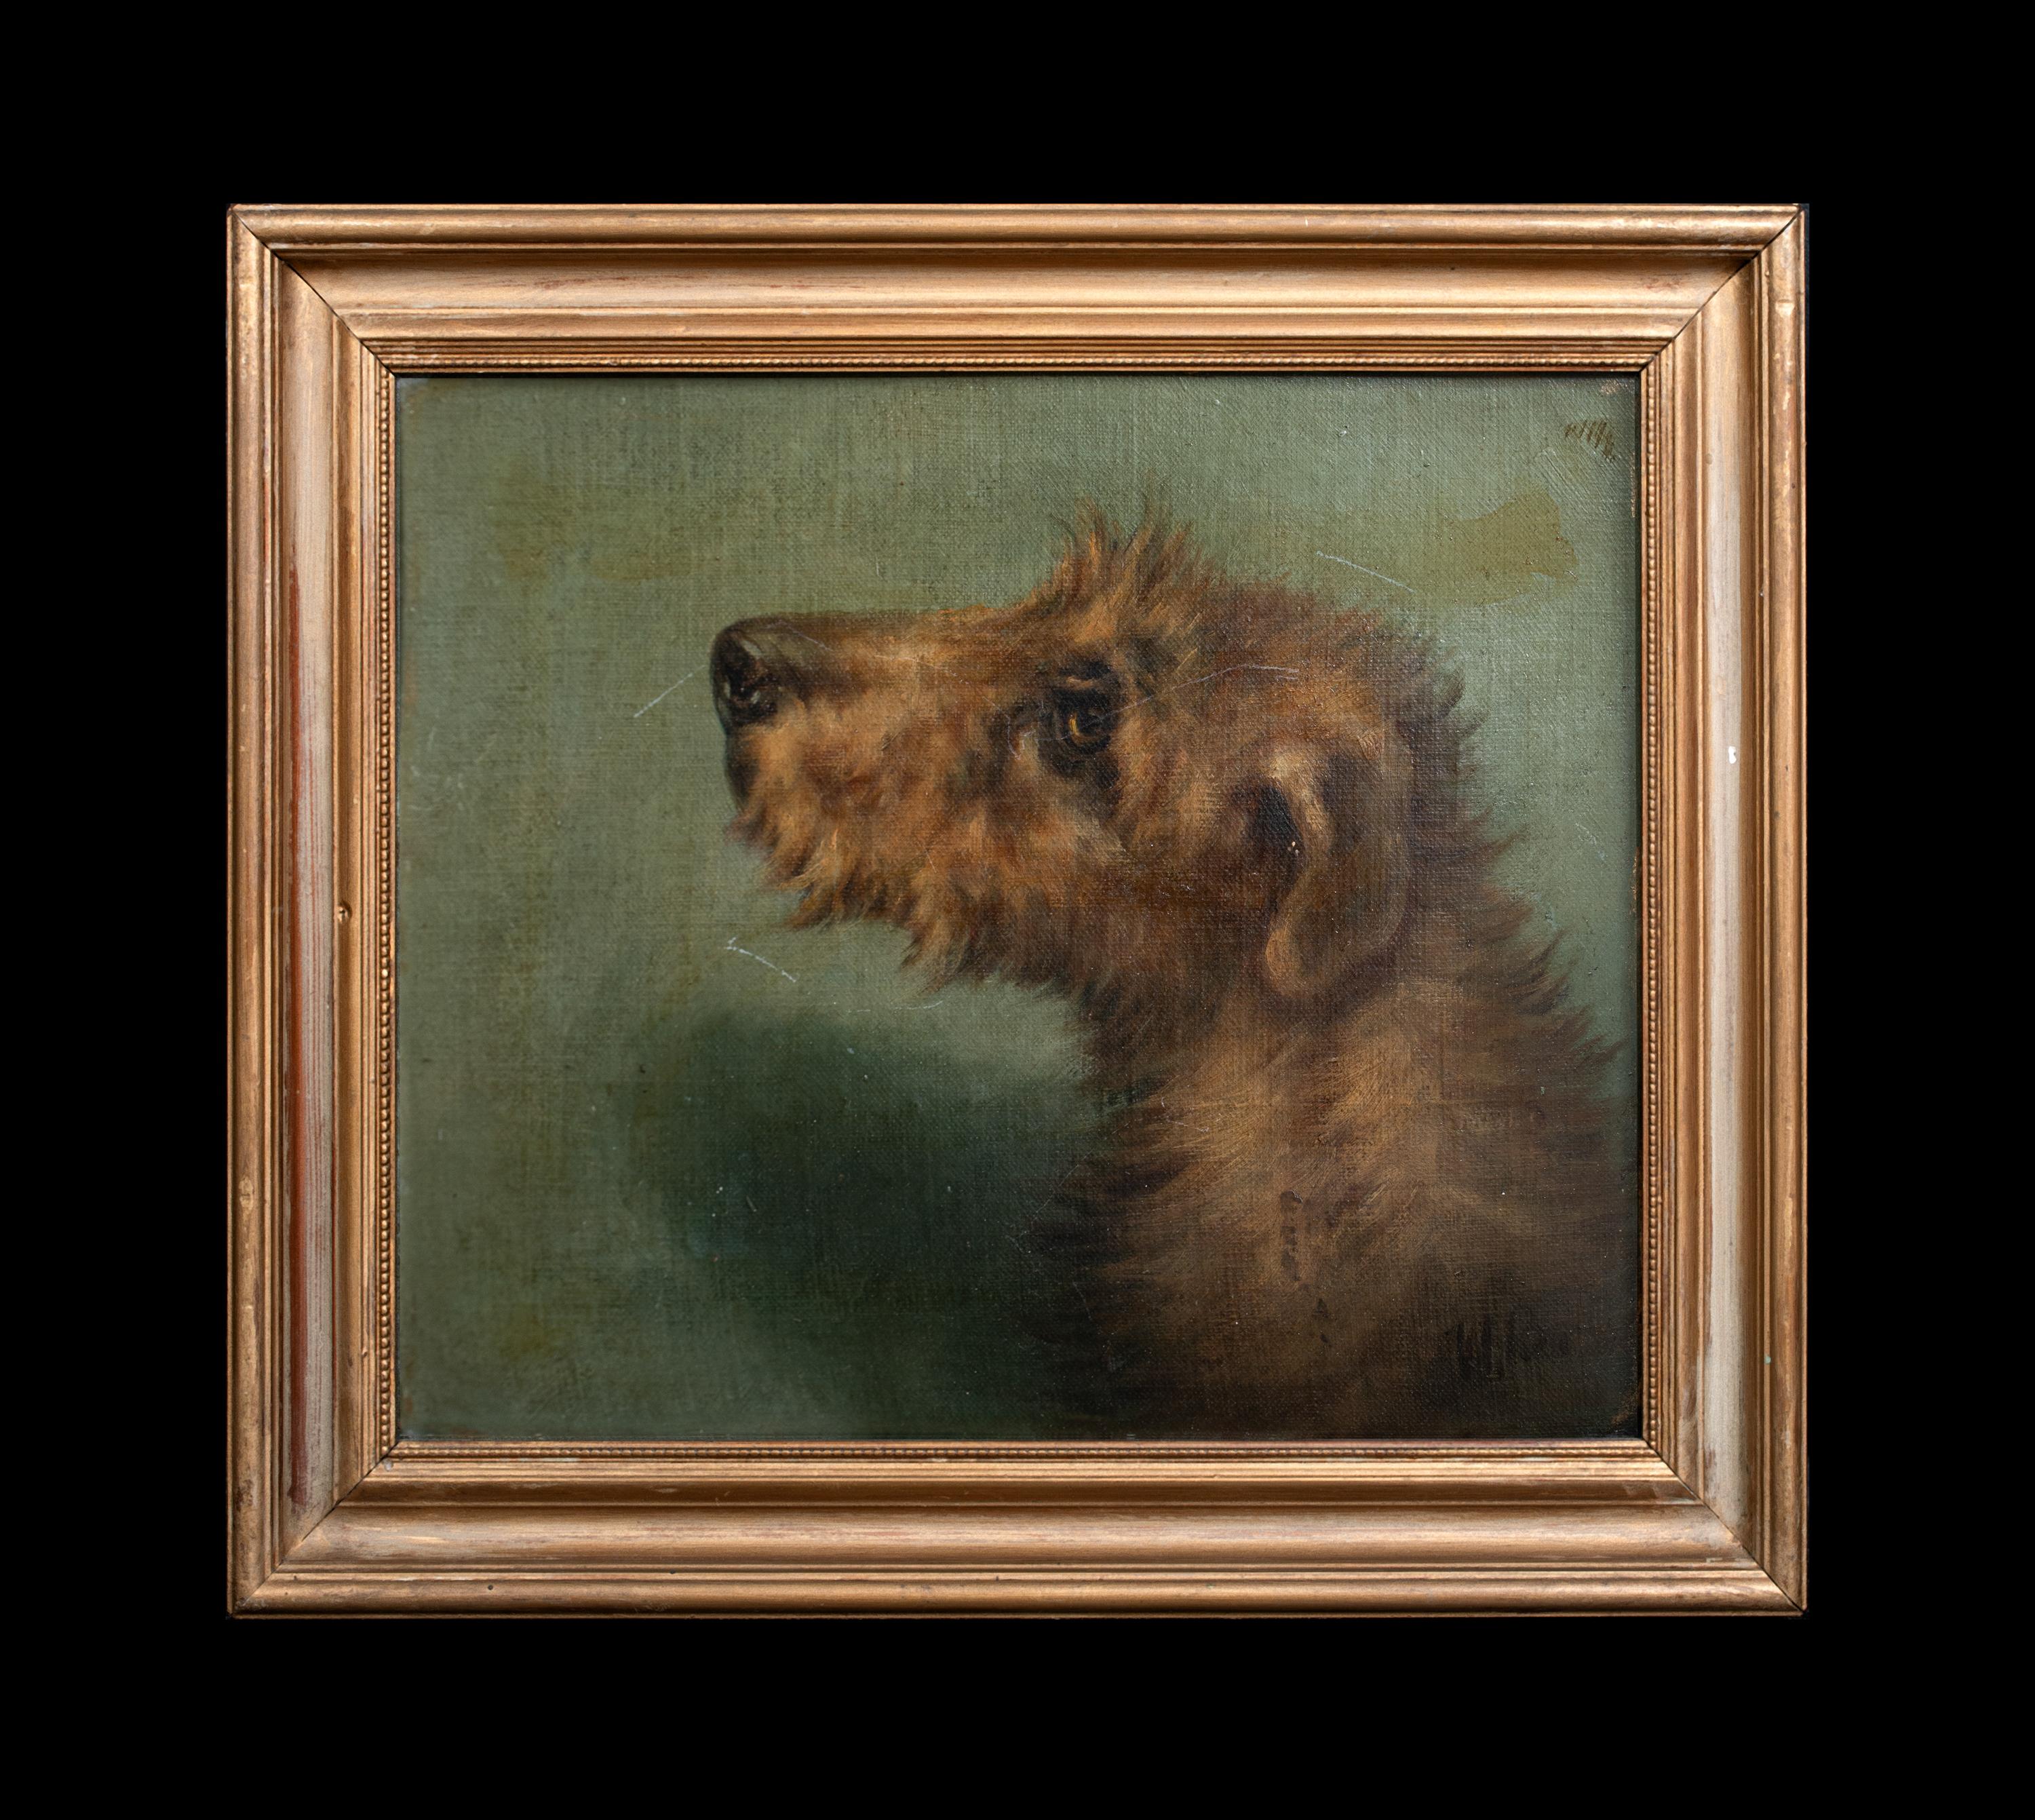 Porträt eines irischen Terriers, 19. Jahrhundert  Signiert oben rechts „EMMS“  CIRCA 1900  – Painting von Unknown